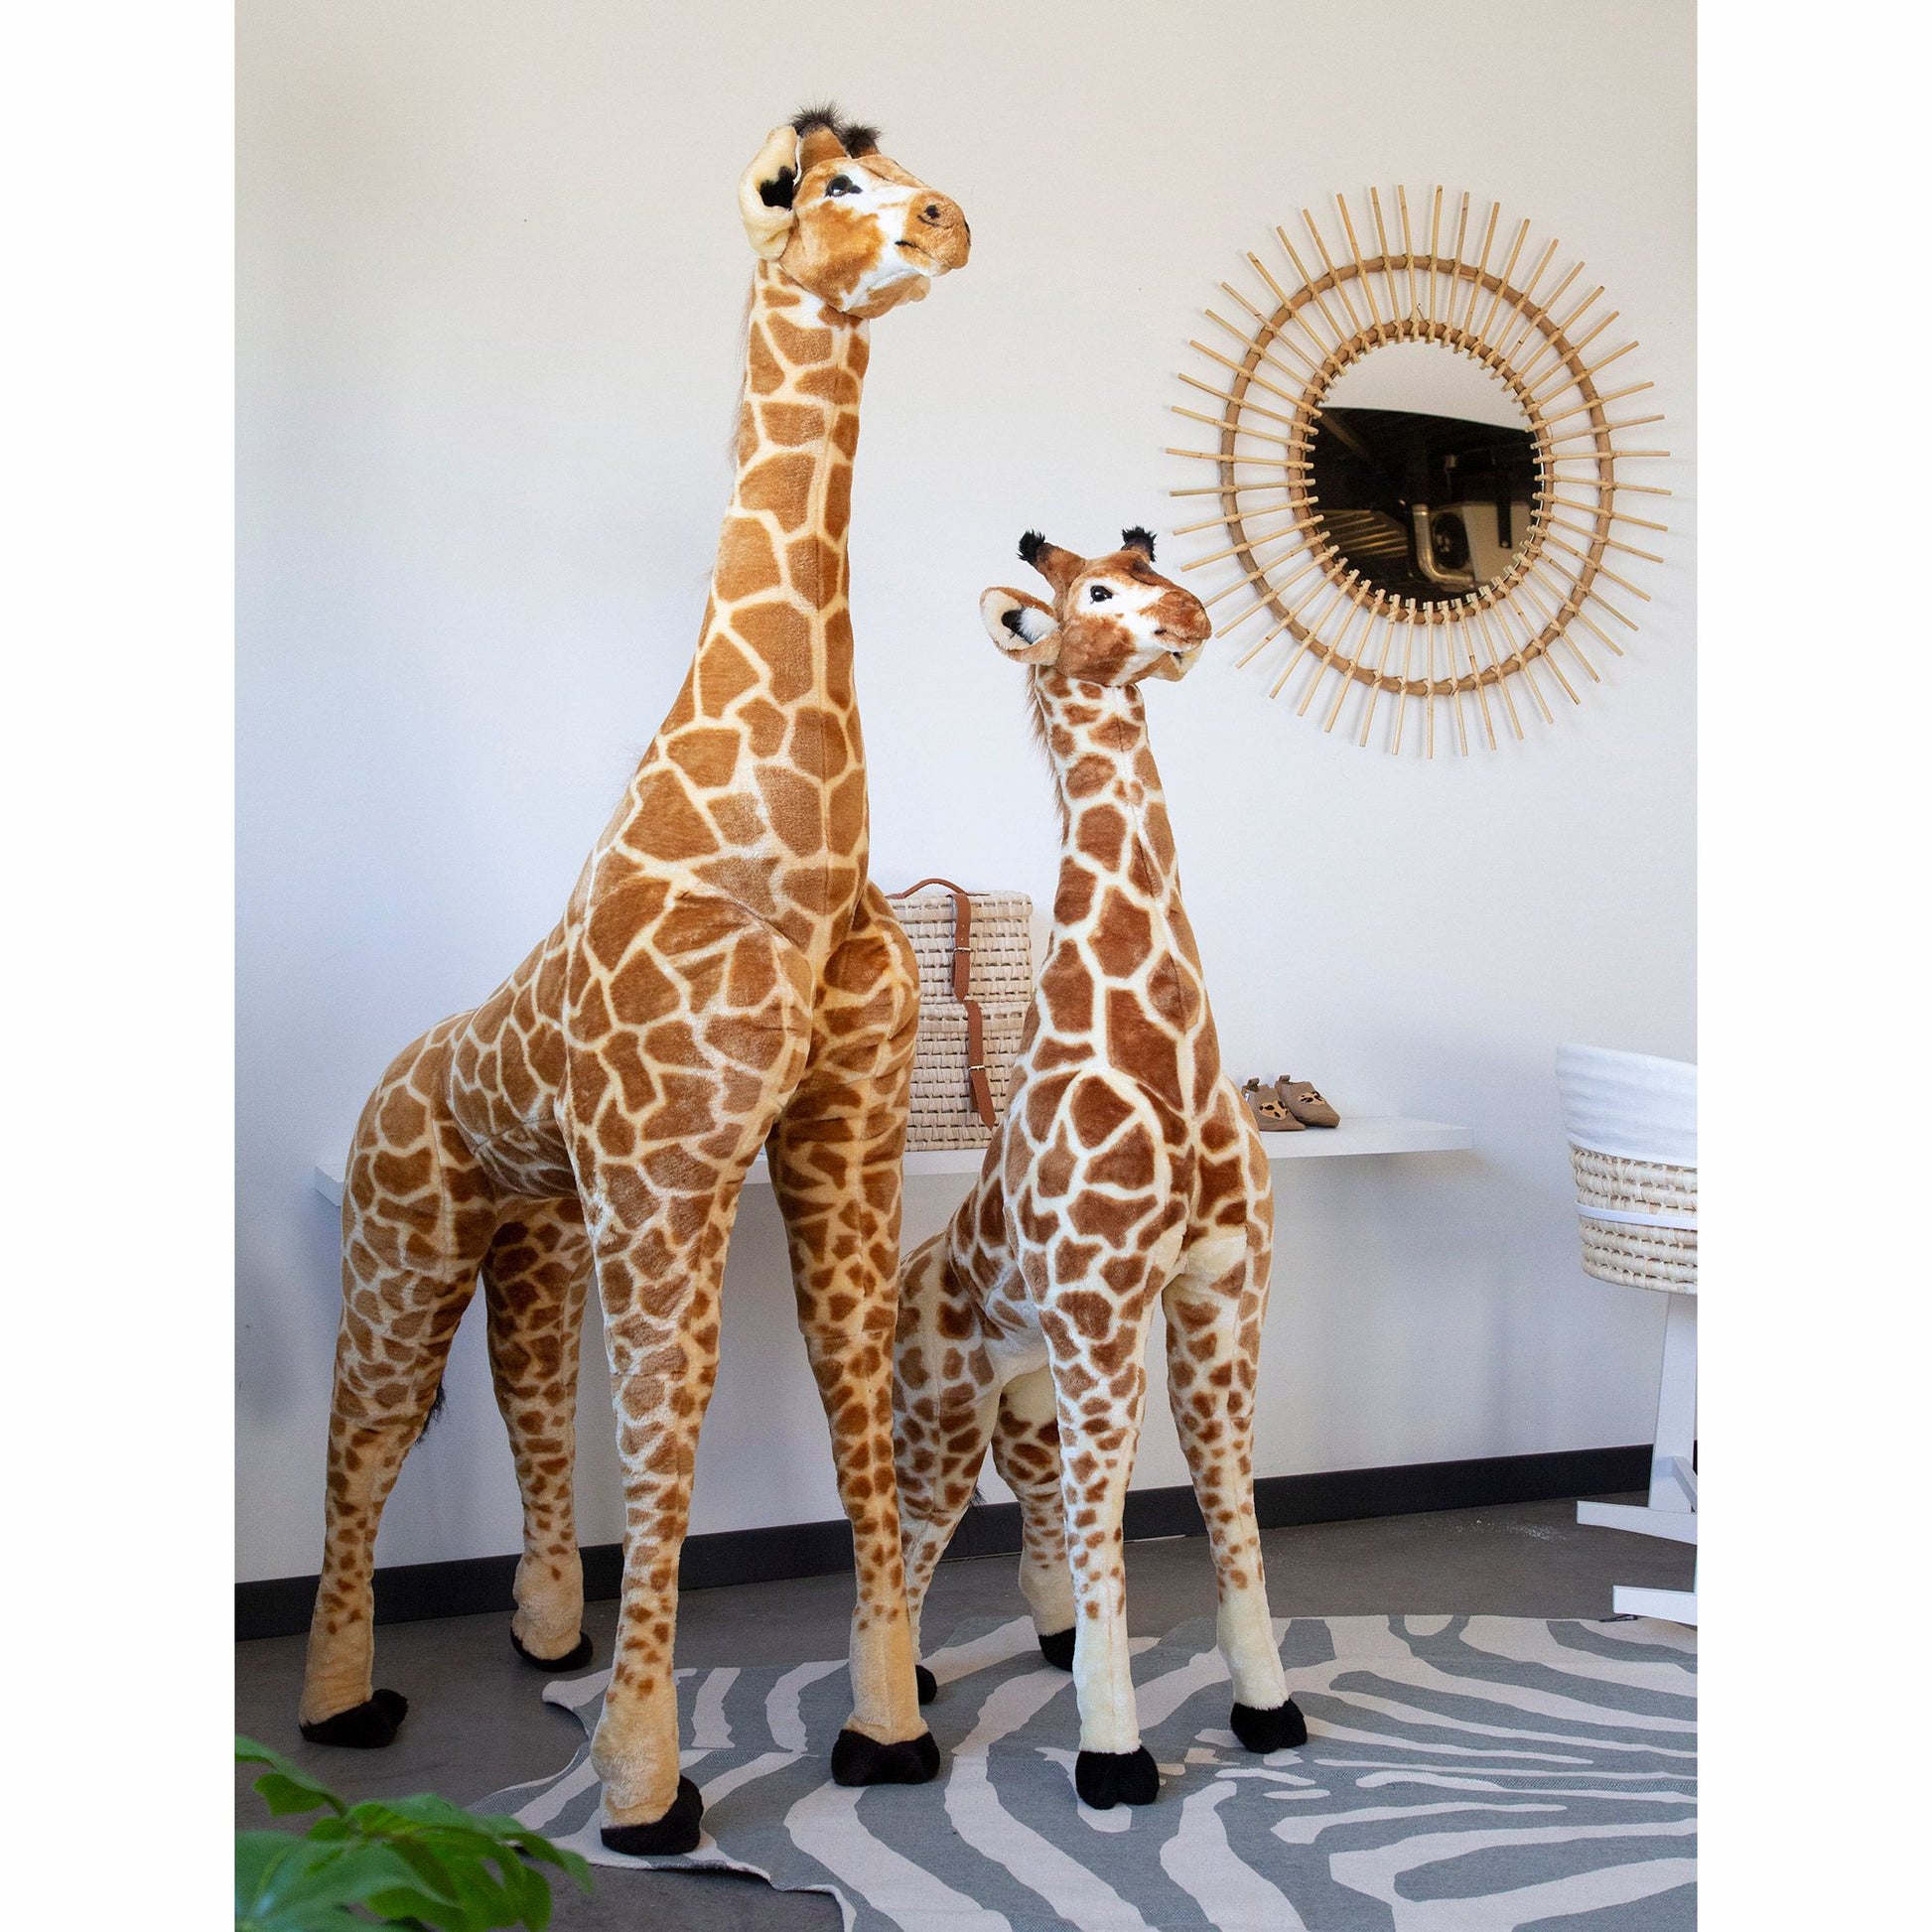 Childhome Standing Giraffe - Small